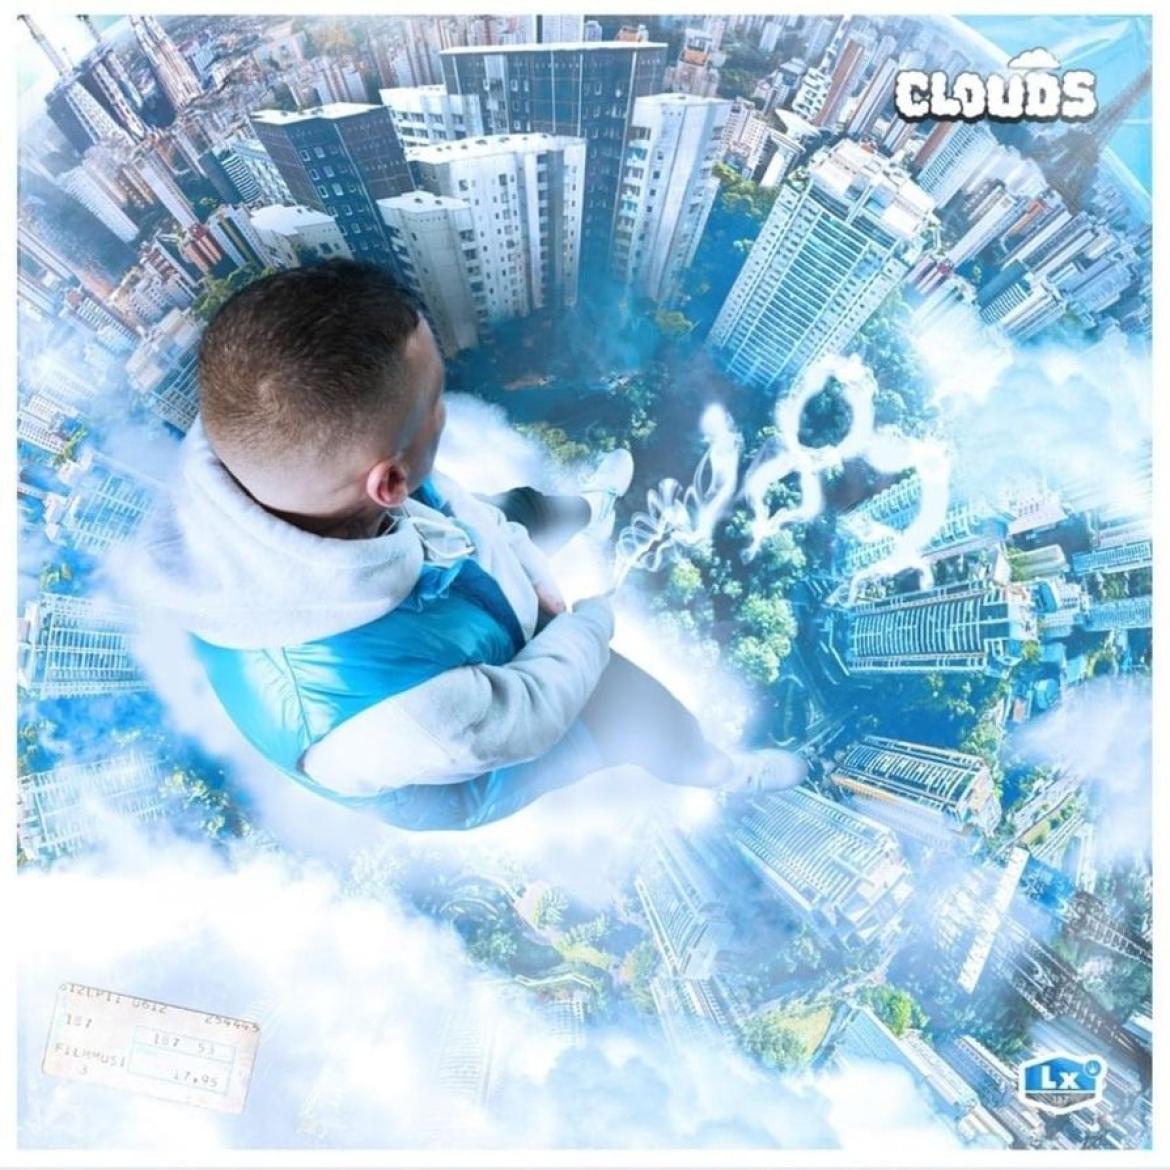 LX Album "Clouds"